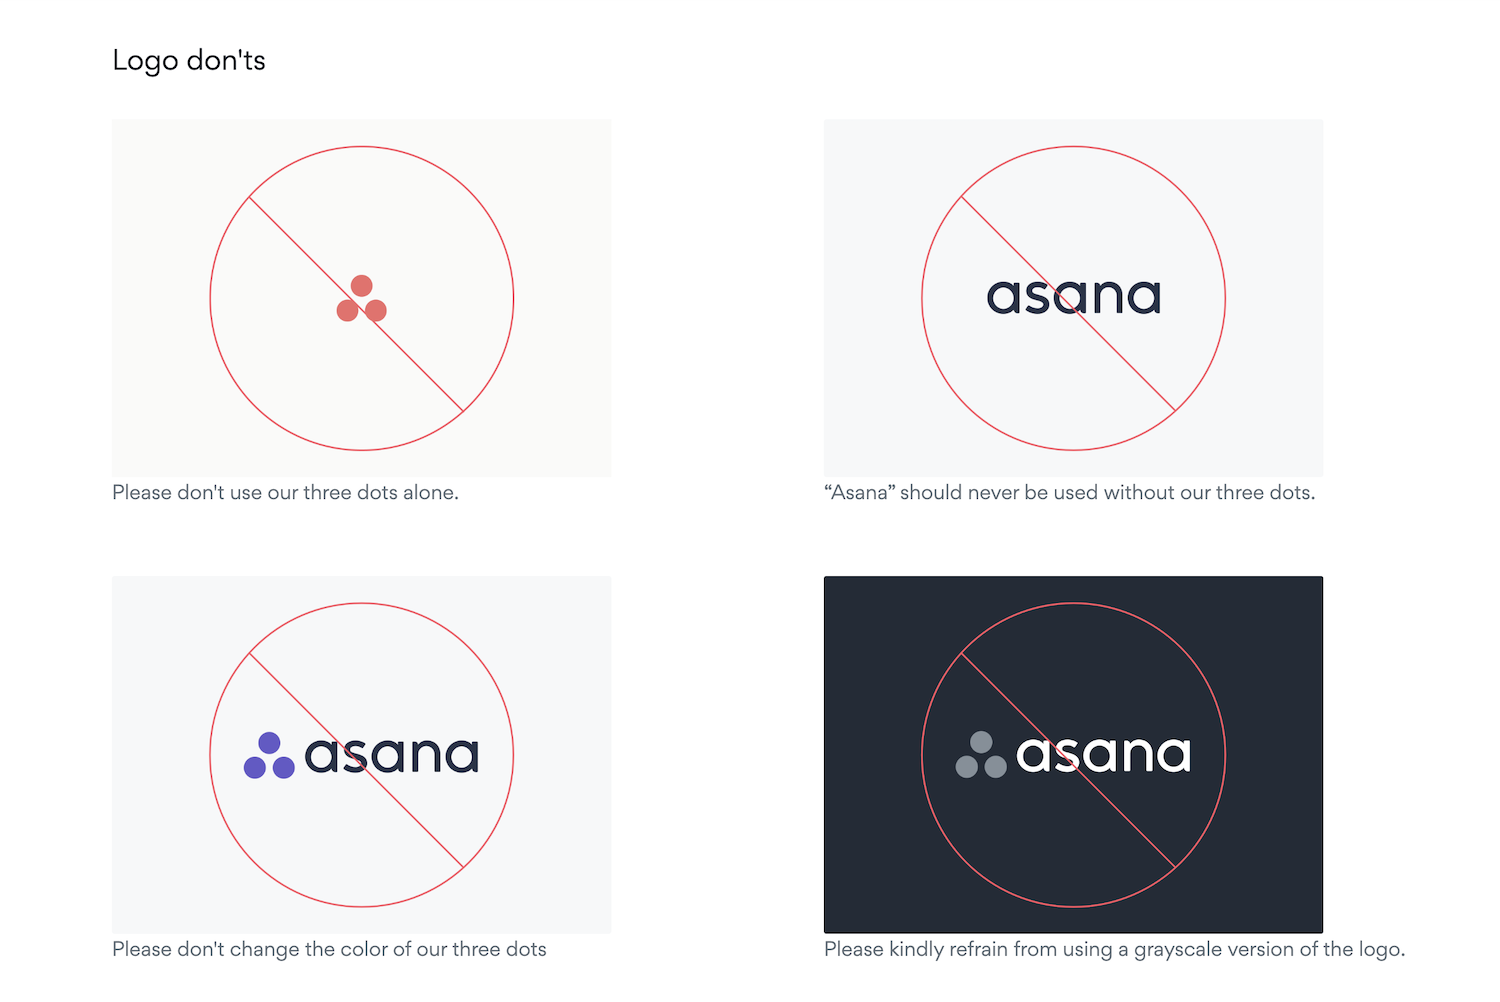 Style guide marki Asana zawiera część dotyczącą niedozwolonych praktyk modyfikacji logo w internecie